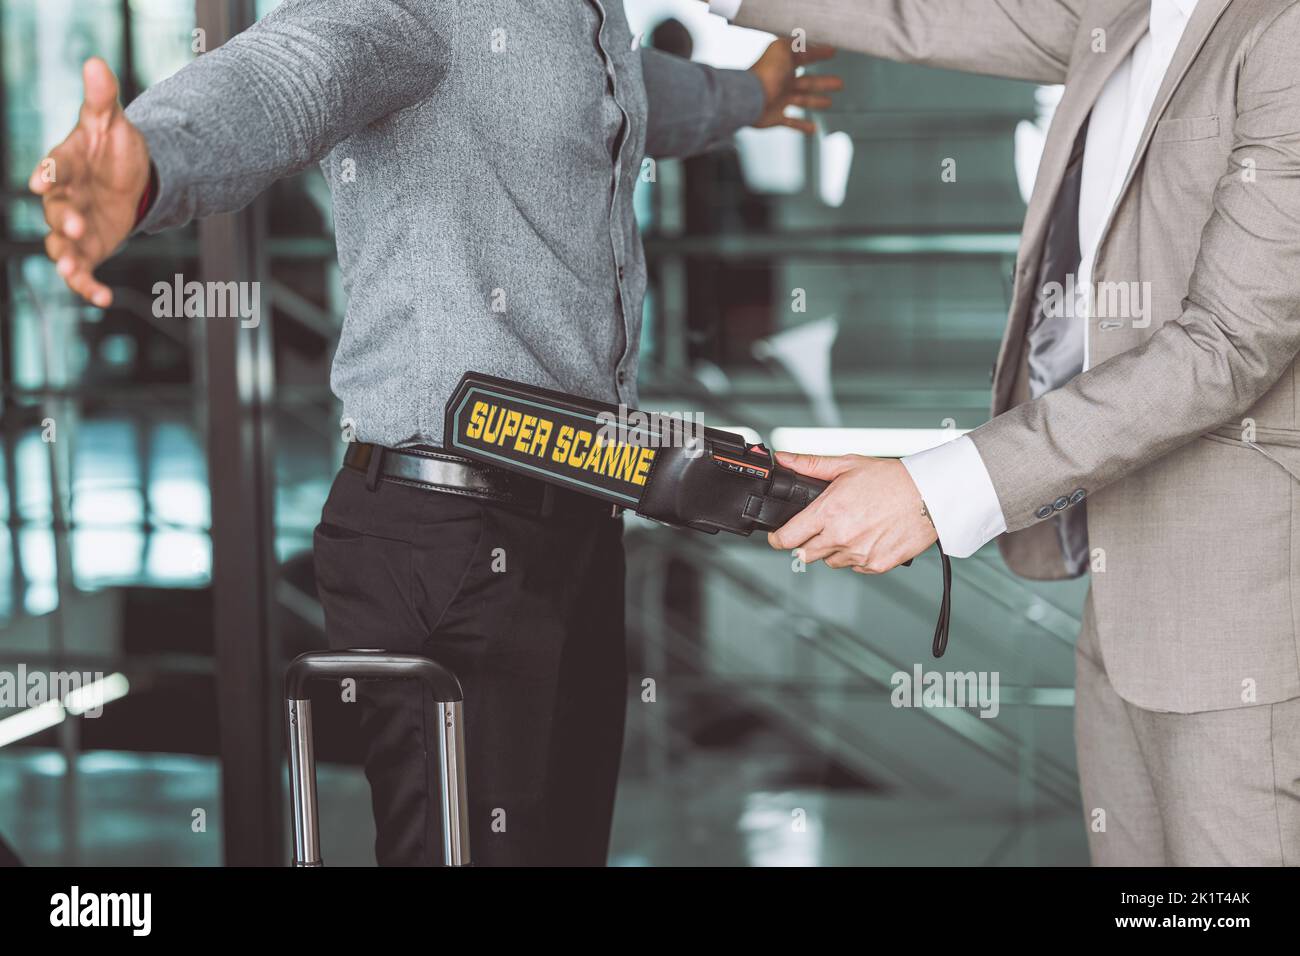 l'agent de contrôle de sécurité de l'aéroport utilise un détecteur de scanner d'armes métalliques pour vérifier chaque passager Banque D'Images